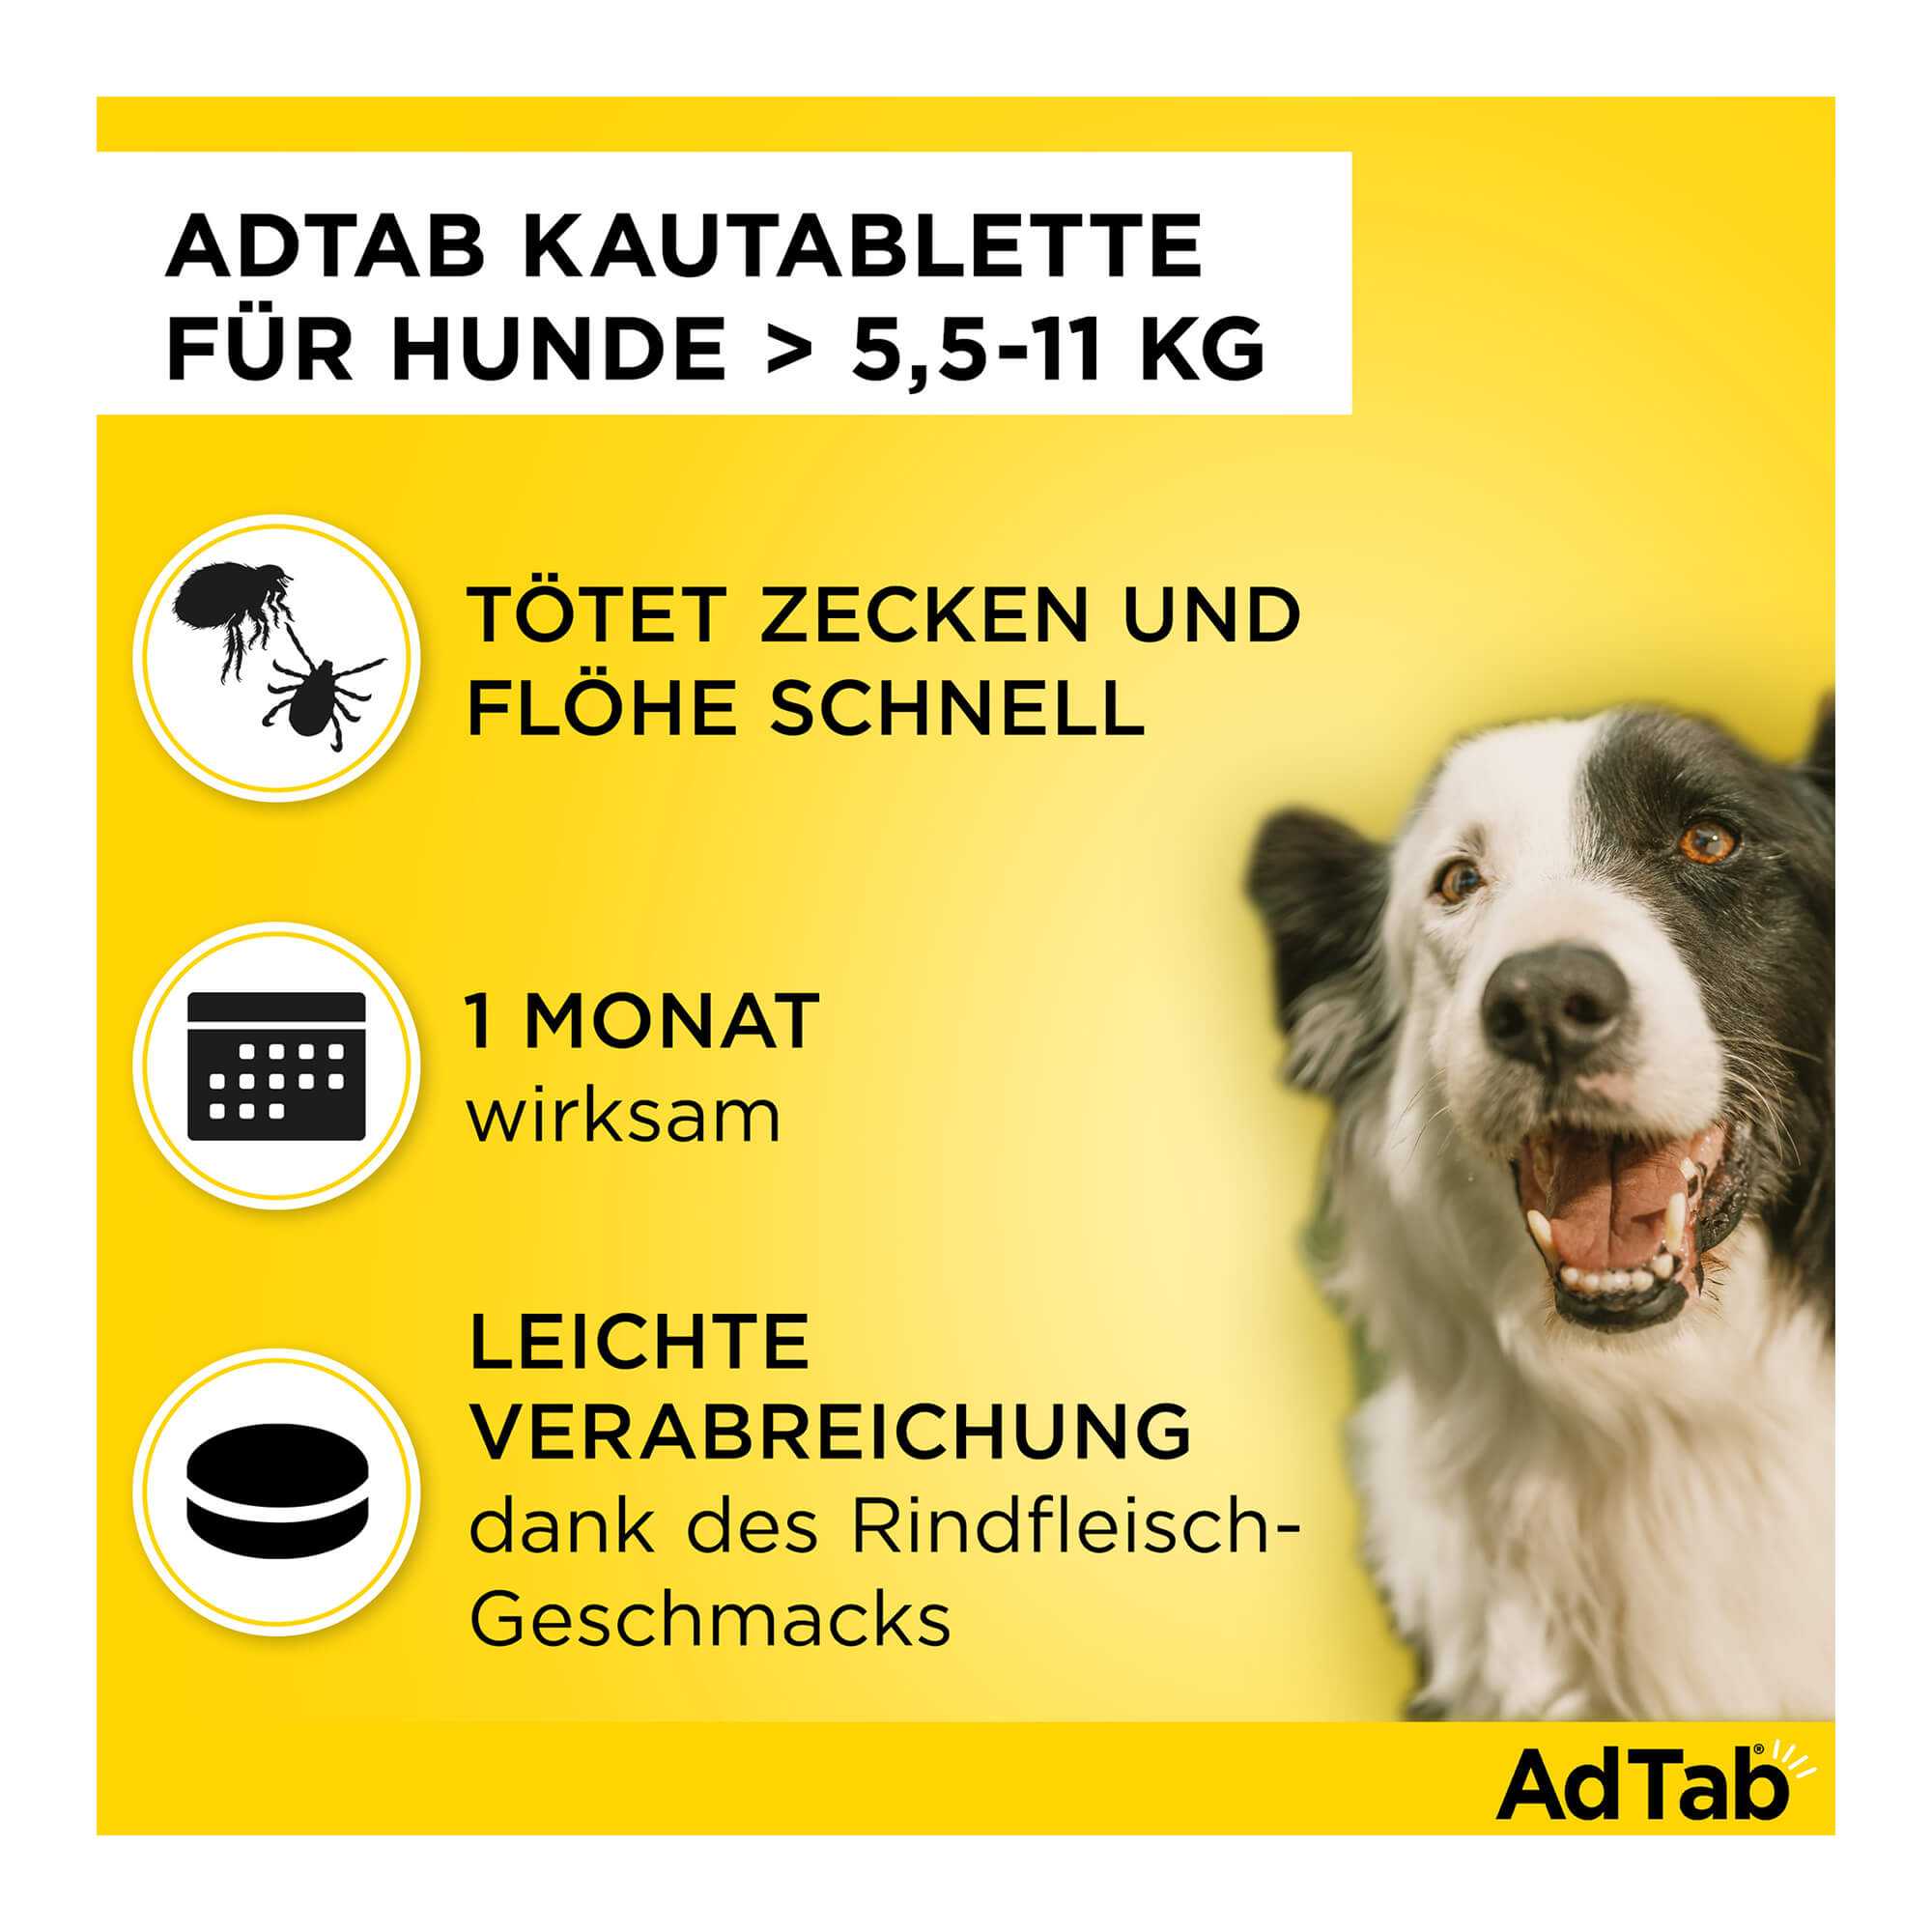 AdTab Kautabletten für Hunde über 5,5 bis 11 kg Merkmale